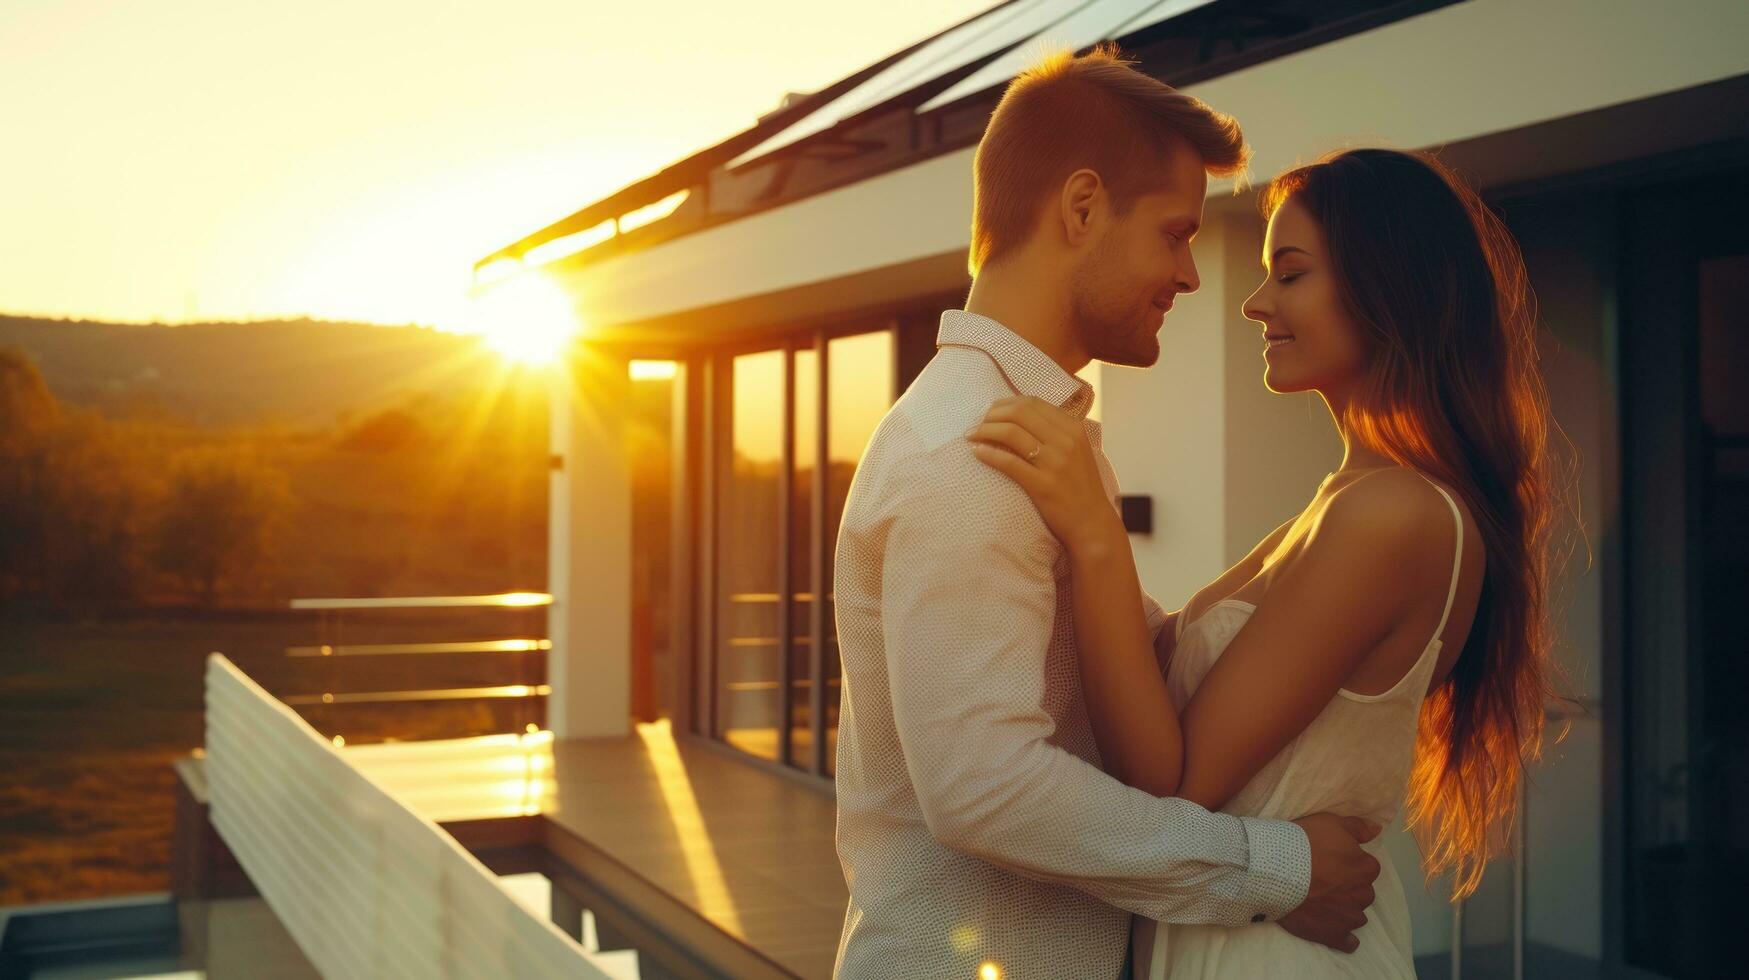 jovem casado casal abraços dentro frente do a casa dentro verão pôr do sol foto